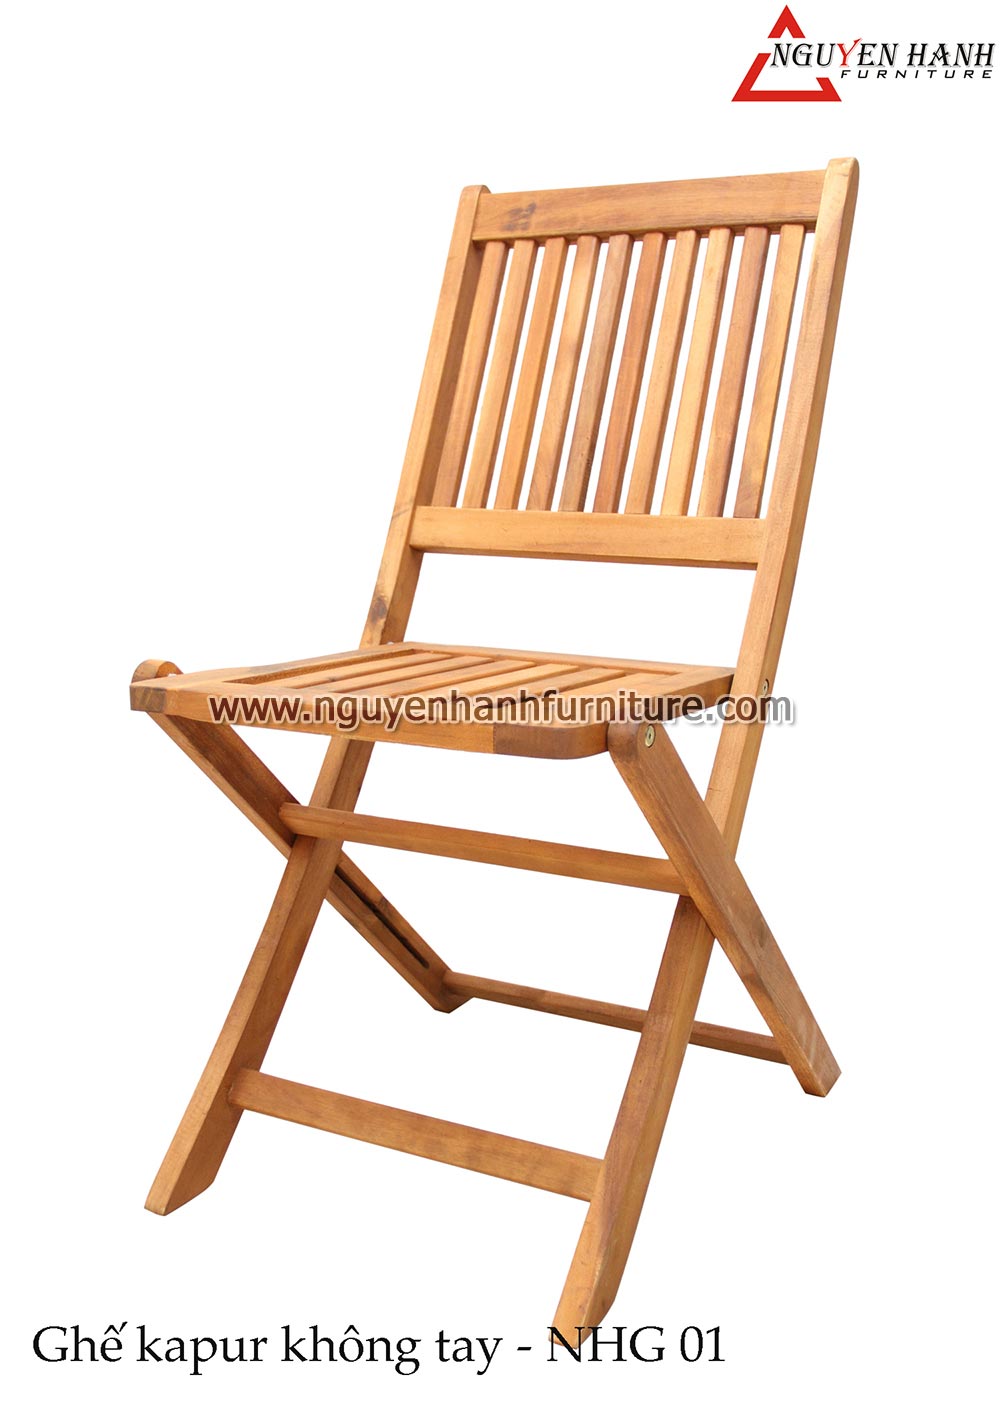 Name product: No armrest Kapur chair NHG01 